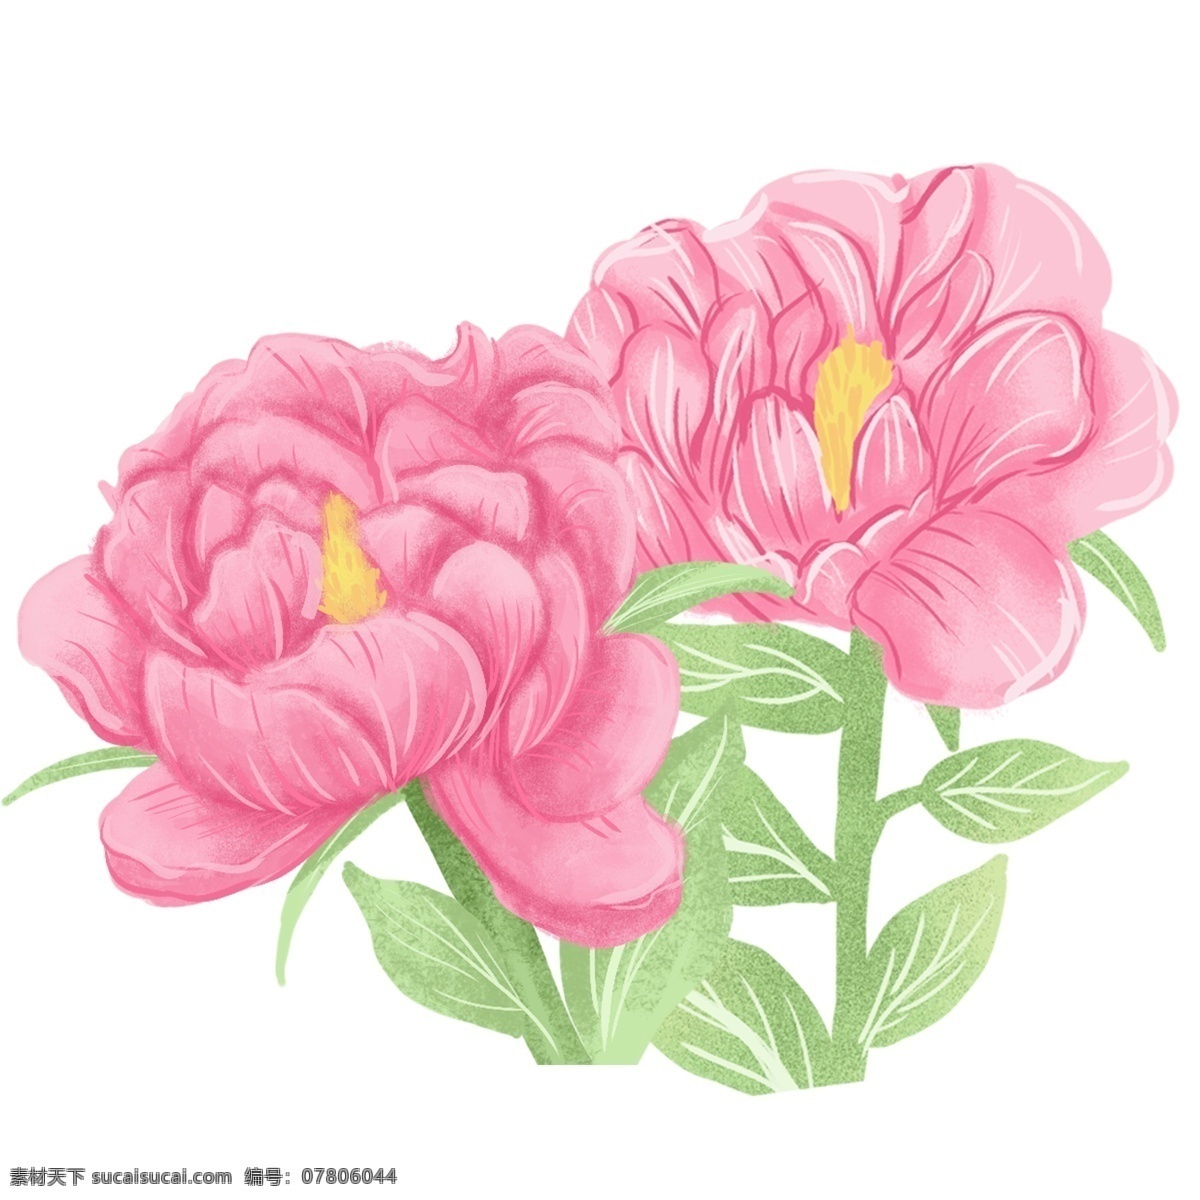 粉色 兰花 小清 新设 计 唯美 花朵 植物 花卉 插画 手绘 小清新设计